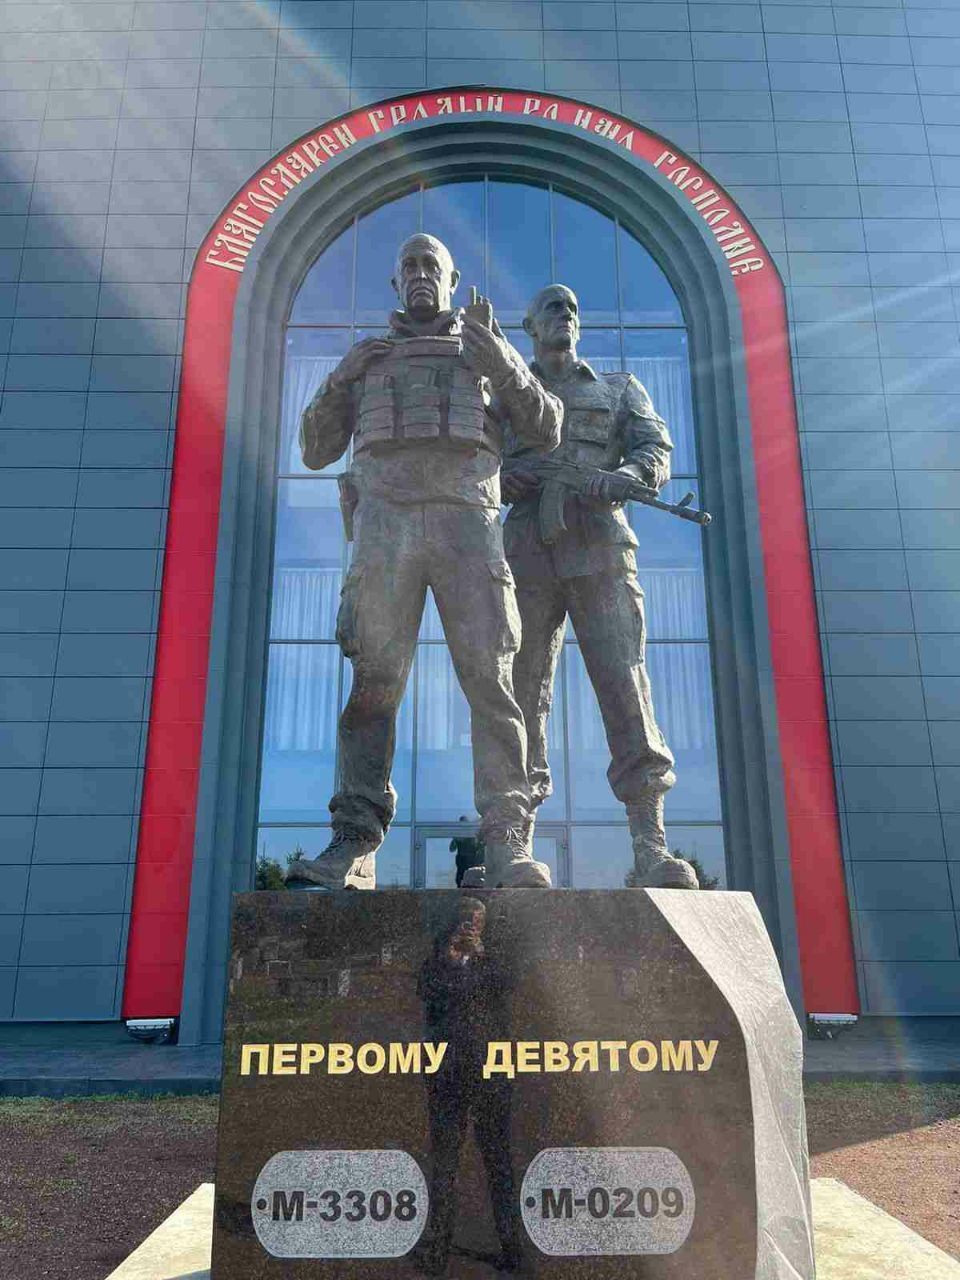 на России на территории часовни открыли памятник Пригожину с цитатой о Христе - фото 132437